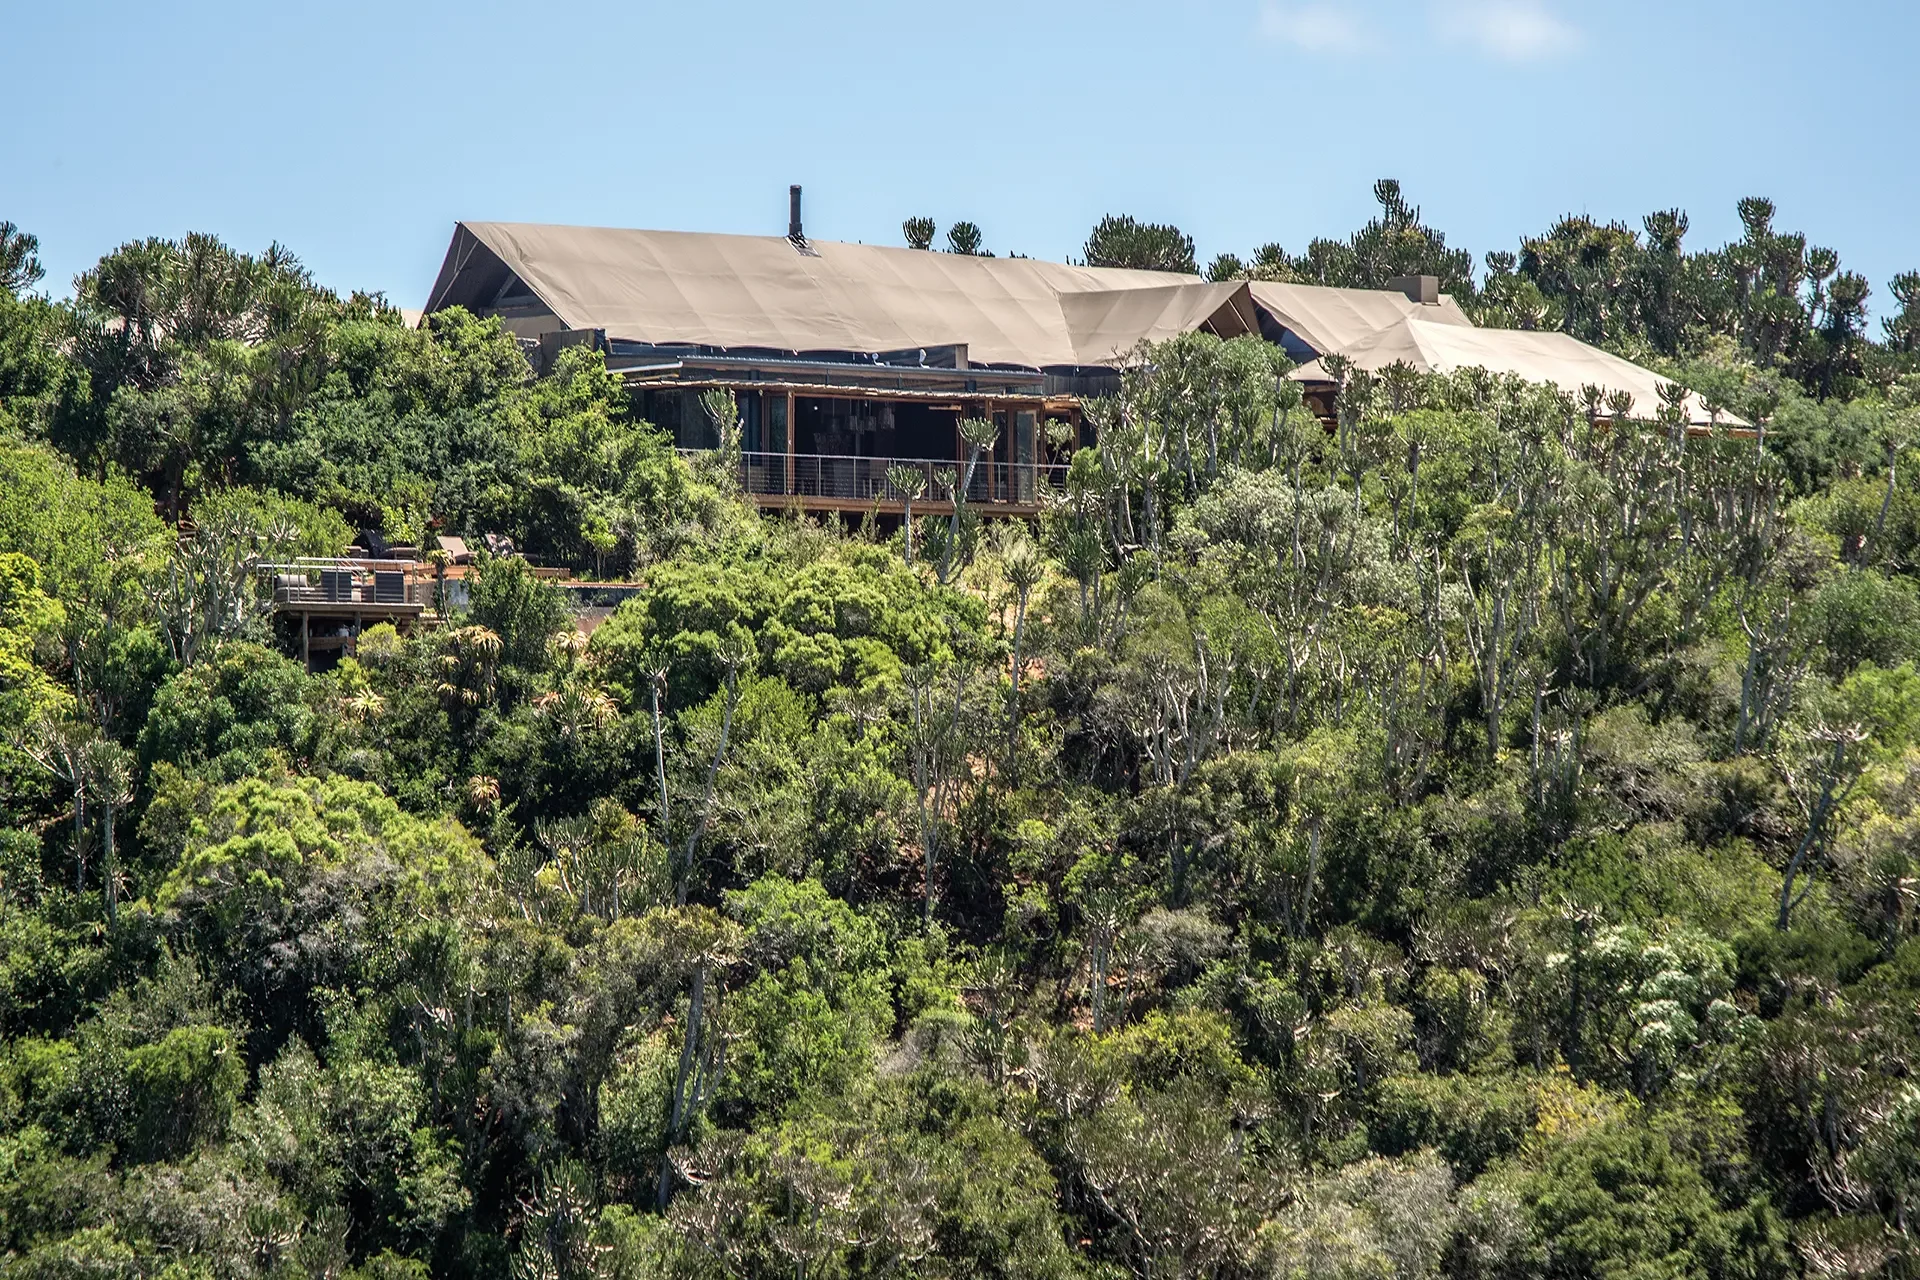 Haus mit Zeltdach der Settlers Drift Lodge